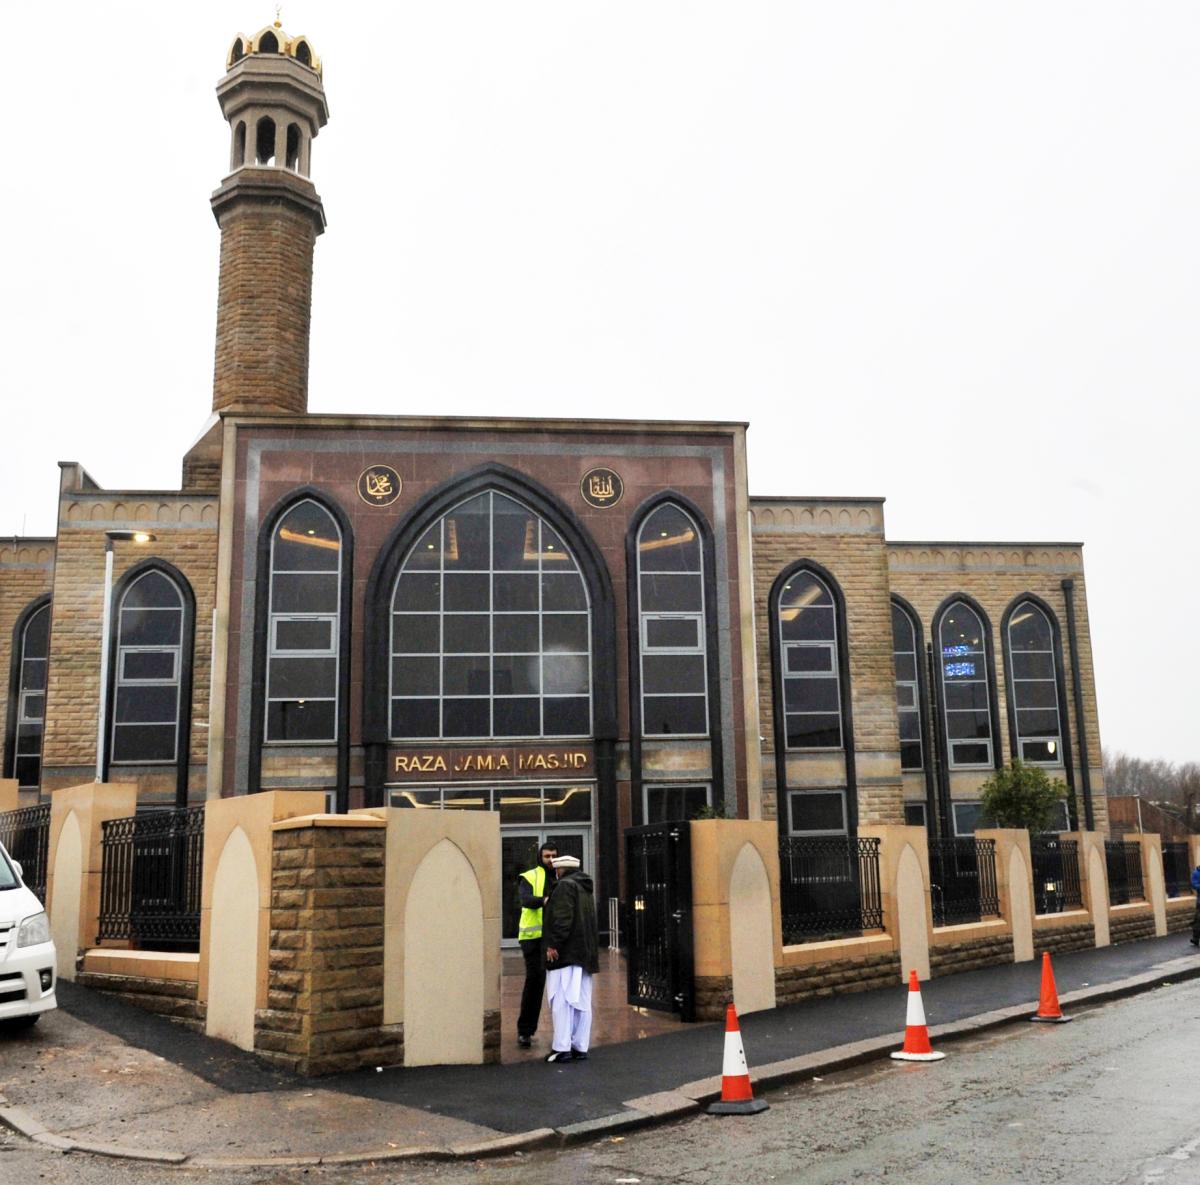 افتتاحیه مسجد جامع رضا(ع) در لانکشایر انگلستان